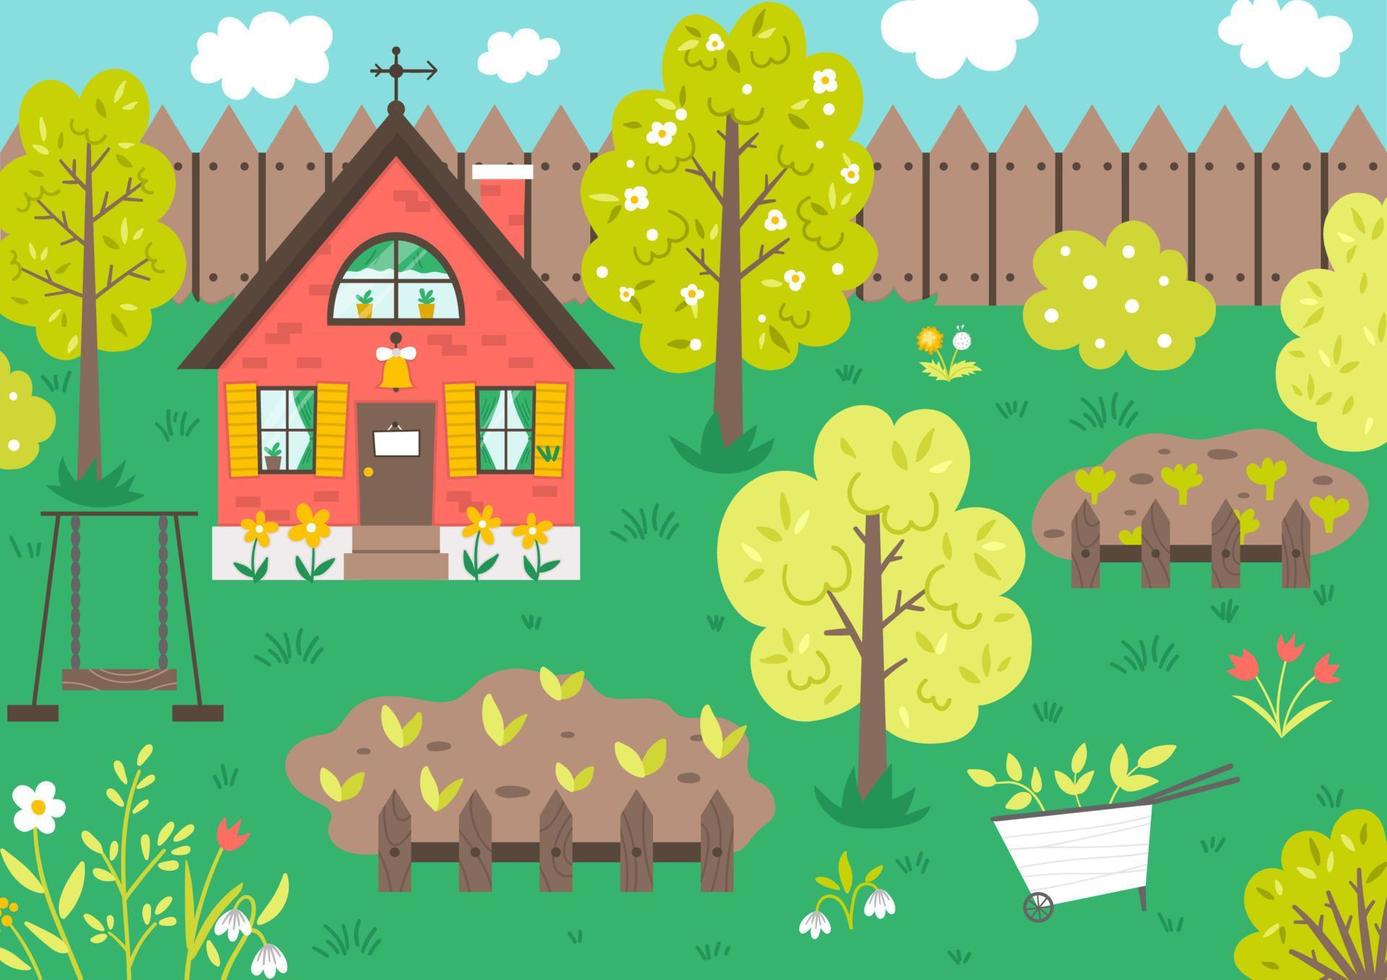 vectortuinscène met bomen, landhuis, groentebedden, bloemen, schommel. lente tuinieren landschap. schattige huisje illustratie. landelijk landschap. boerderij woonconcept vector